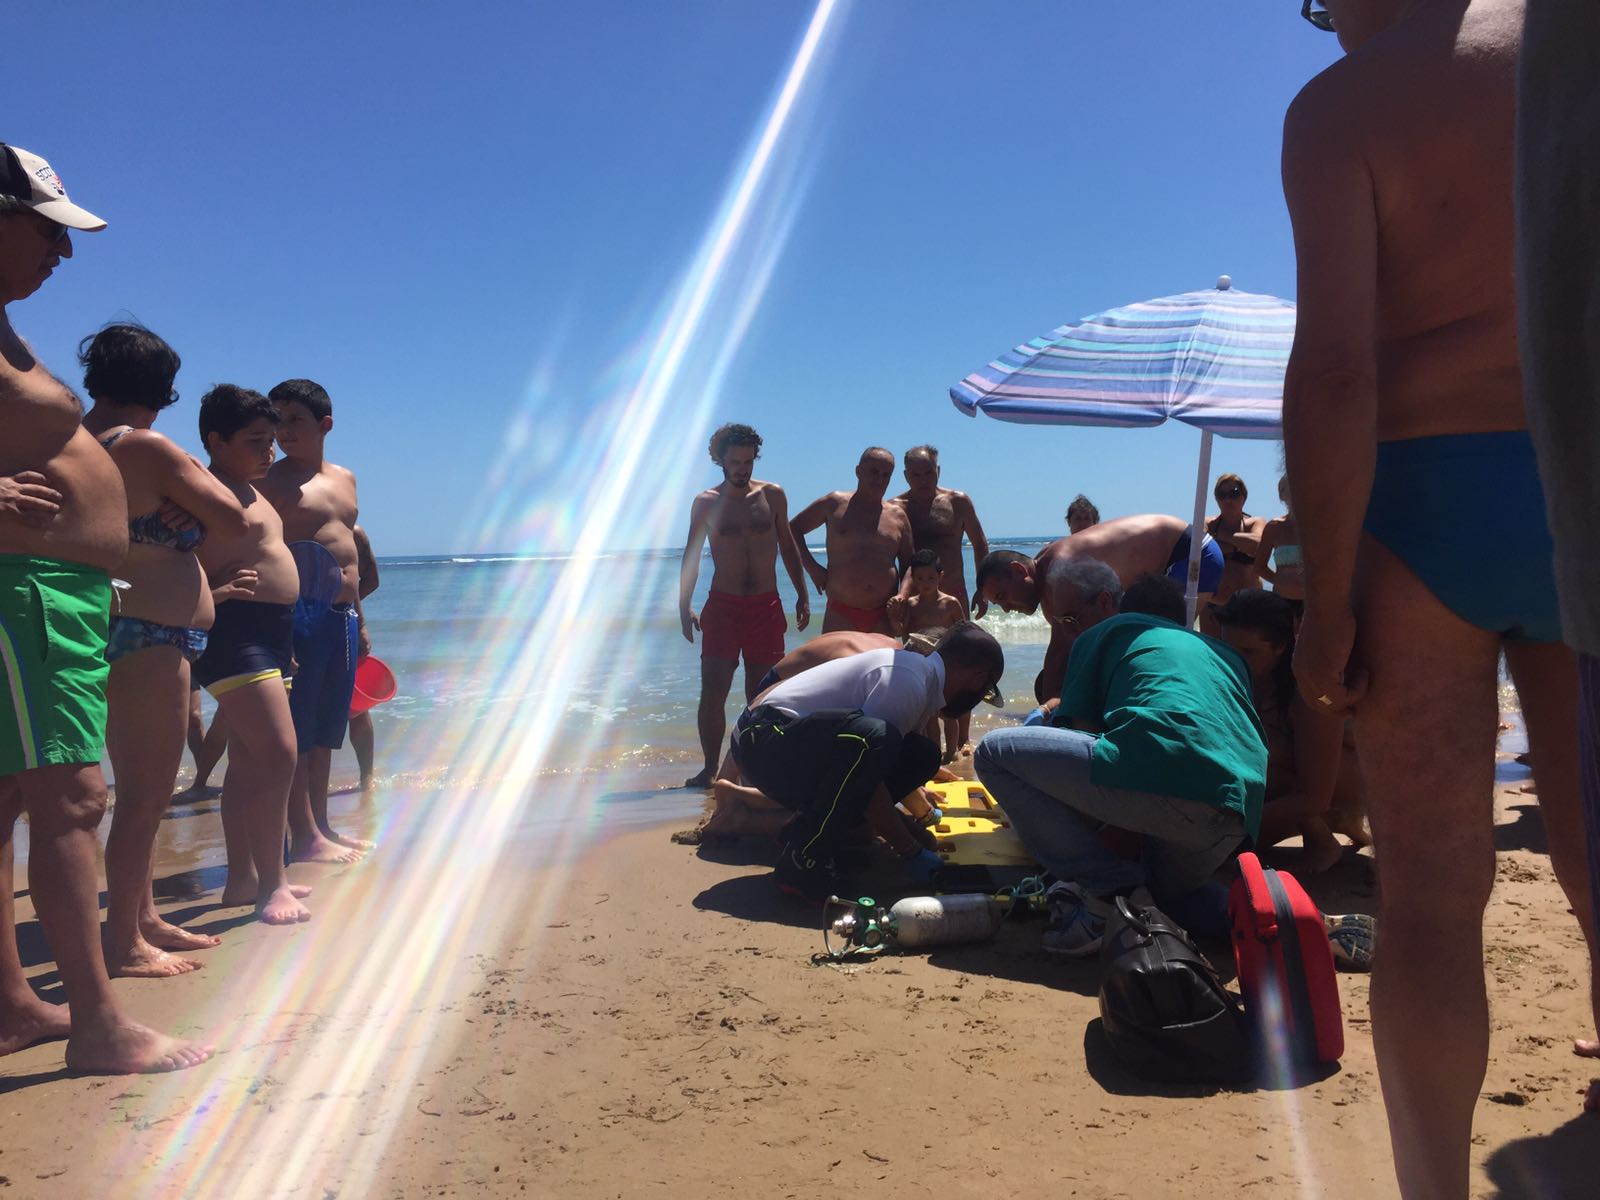  Incidente sulla spiaggia di P.Secca: uomo sbatte la testa dopo un tuffo